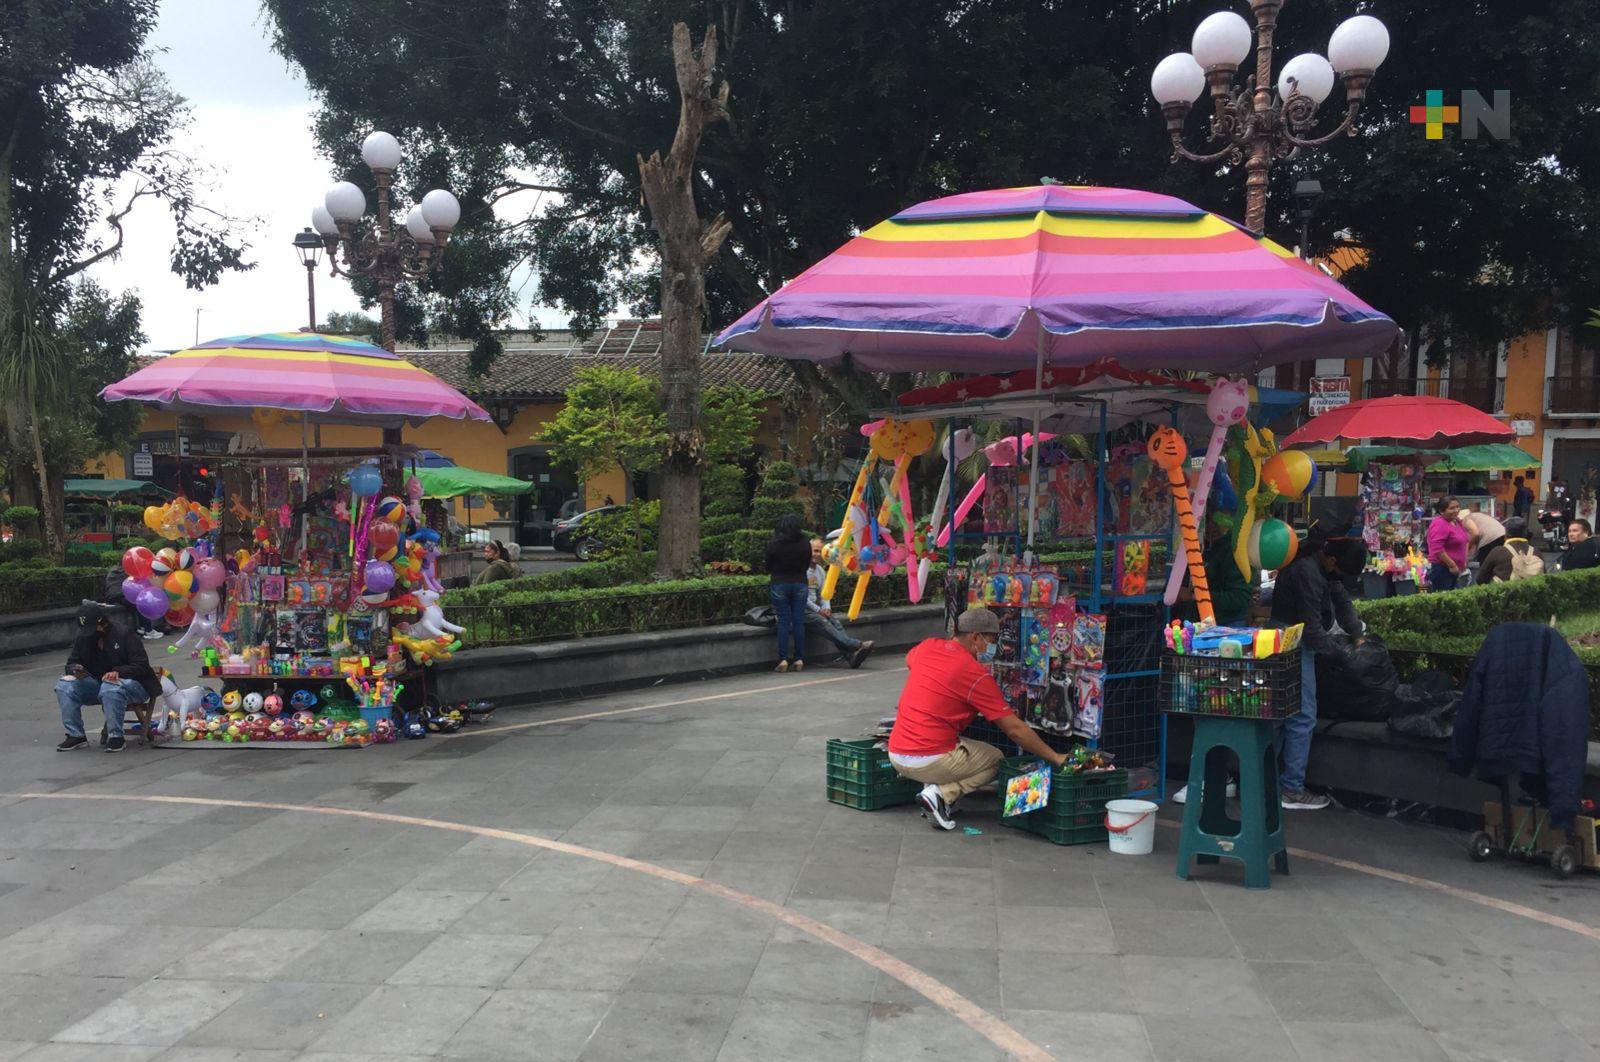 Verificarán cédulas y permisos de vendedores ambulantes en Coatepec